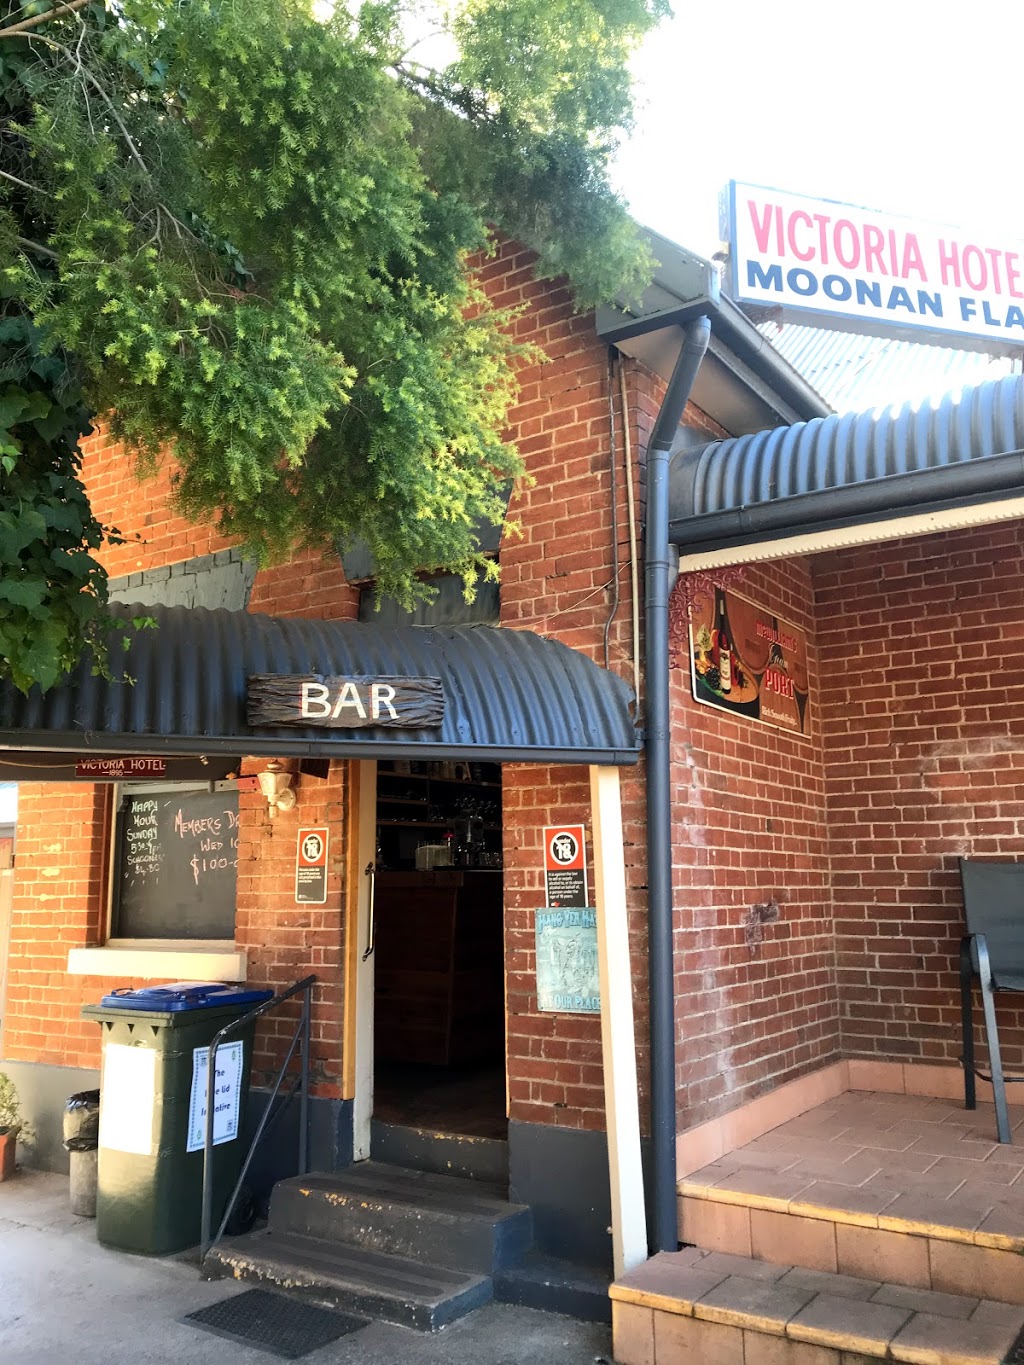 Victoria Hotel Moonan Flat Pub | lodging | 1 Mitchell St, Moonan Flat NSW 2337, Australia | 0265463165 OR +61 2 6546 3165